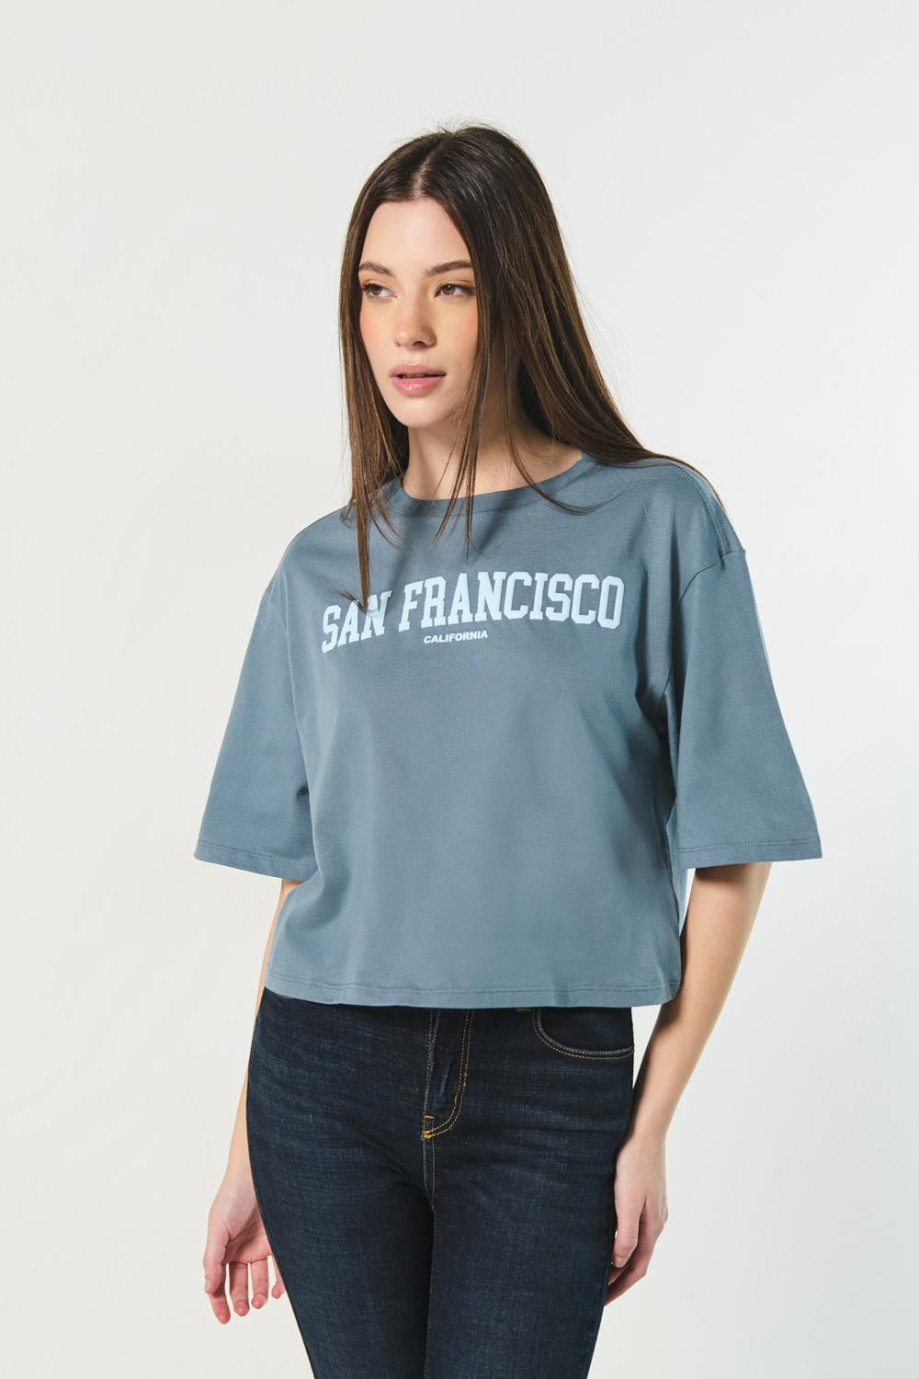 Camiseta azul oscura oversize crop top con texto college